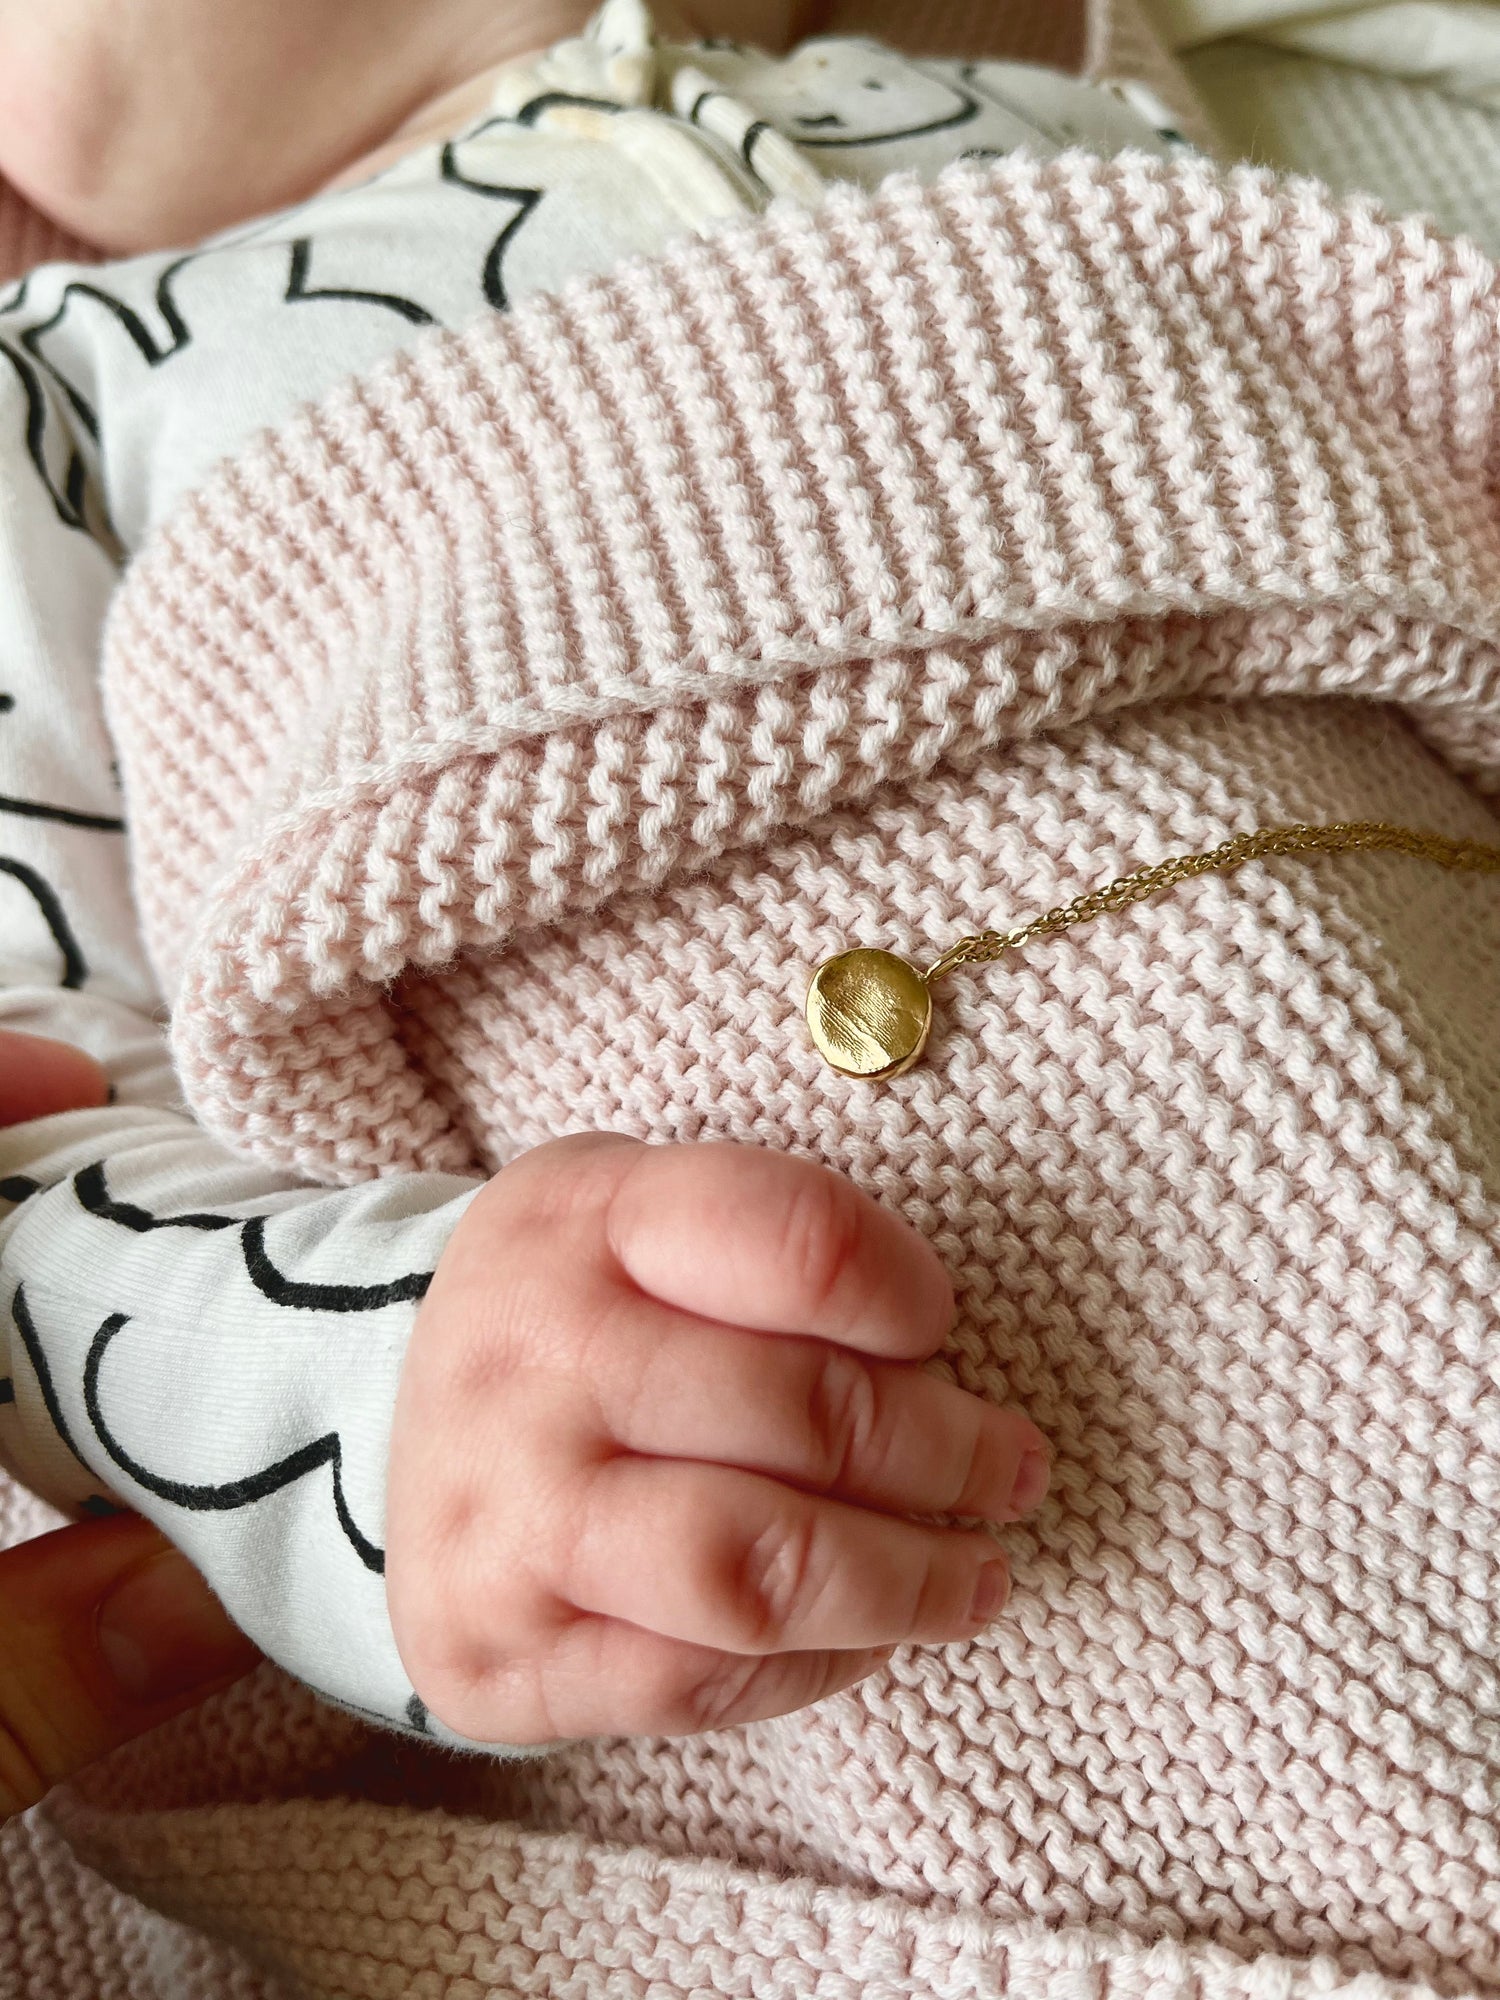 Infant Impression Pendant - 9ct Gold - Fingerprint Impression Kit + Necklace